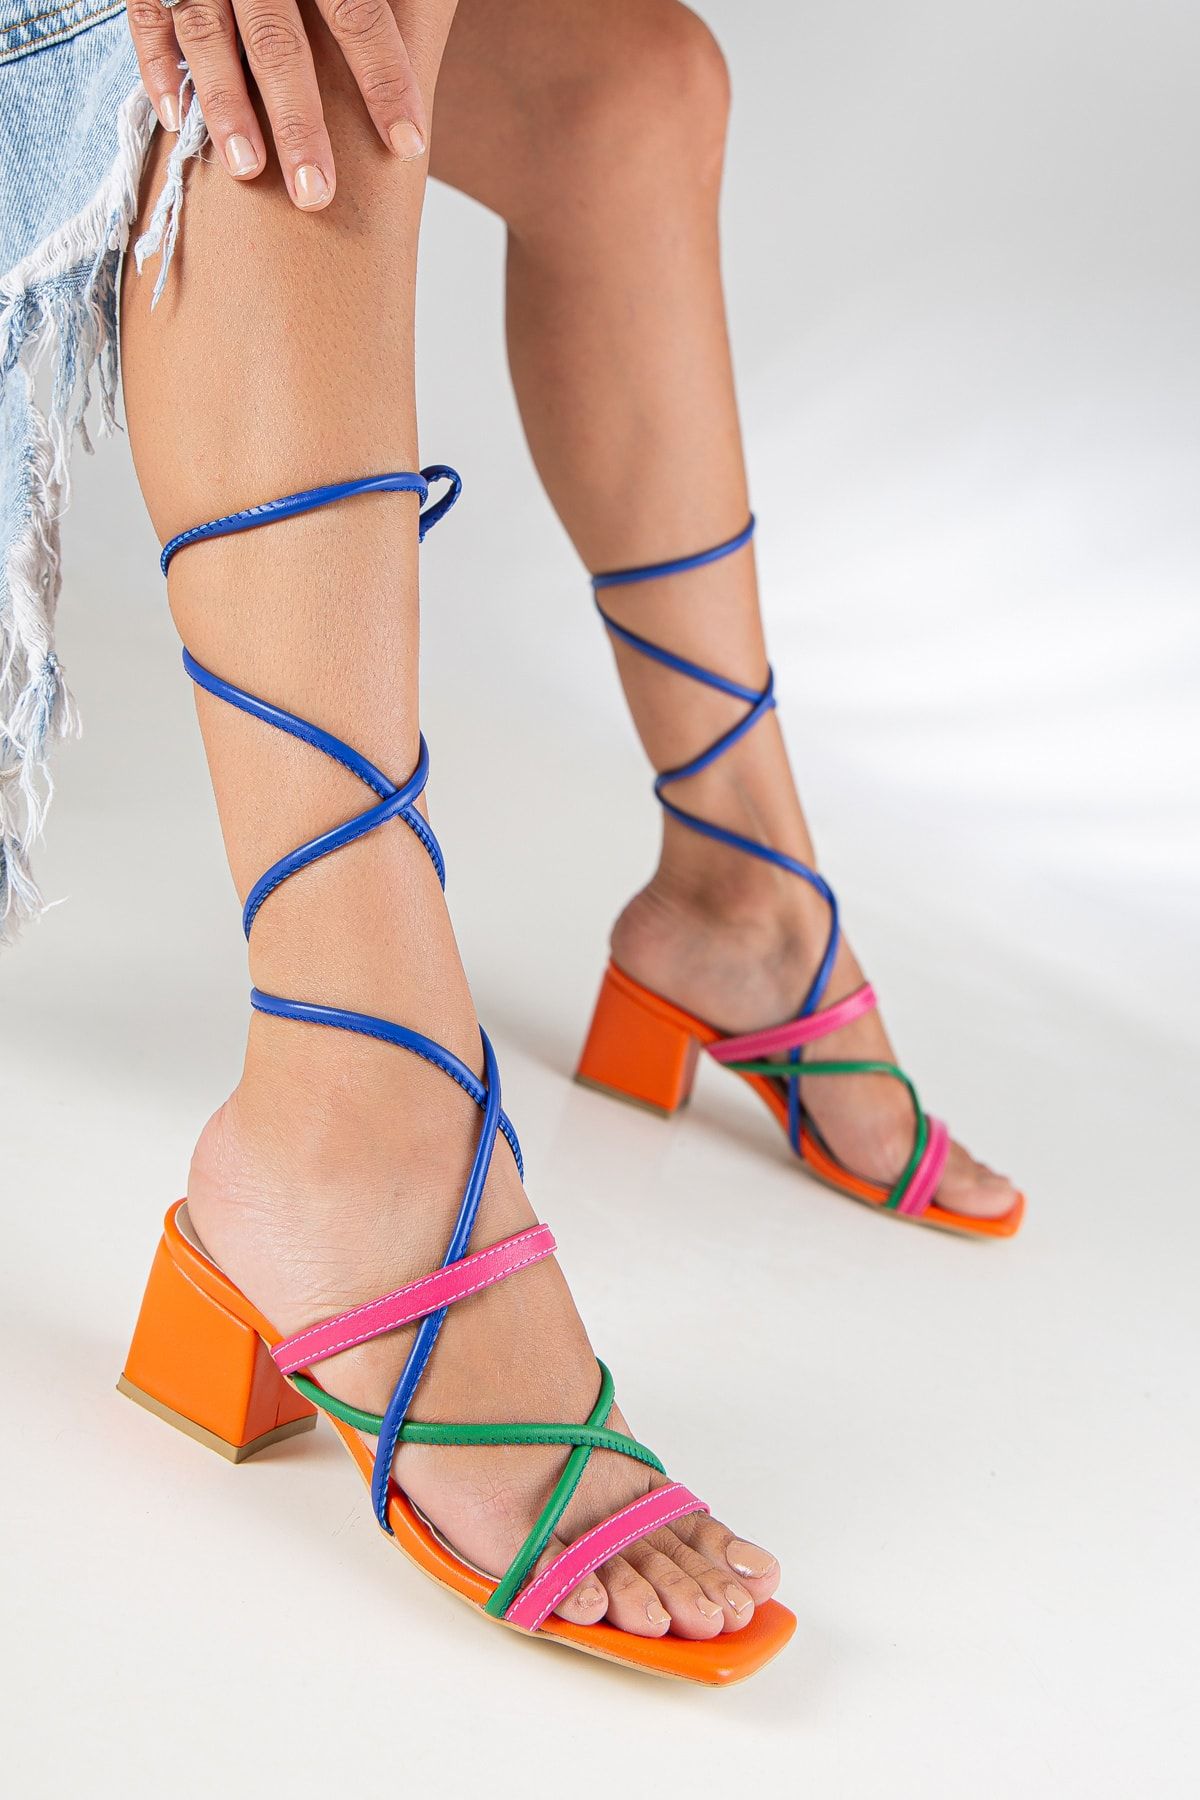 AYMELA Mix Renkli Bilekten Bağcıklı 5cm Kısa Kalın Topuklu Ince Biyeli Yazlık Ayakkabı